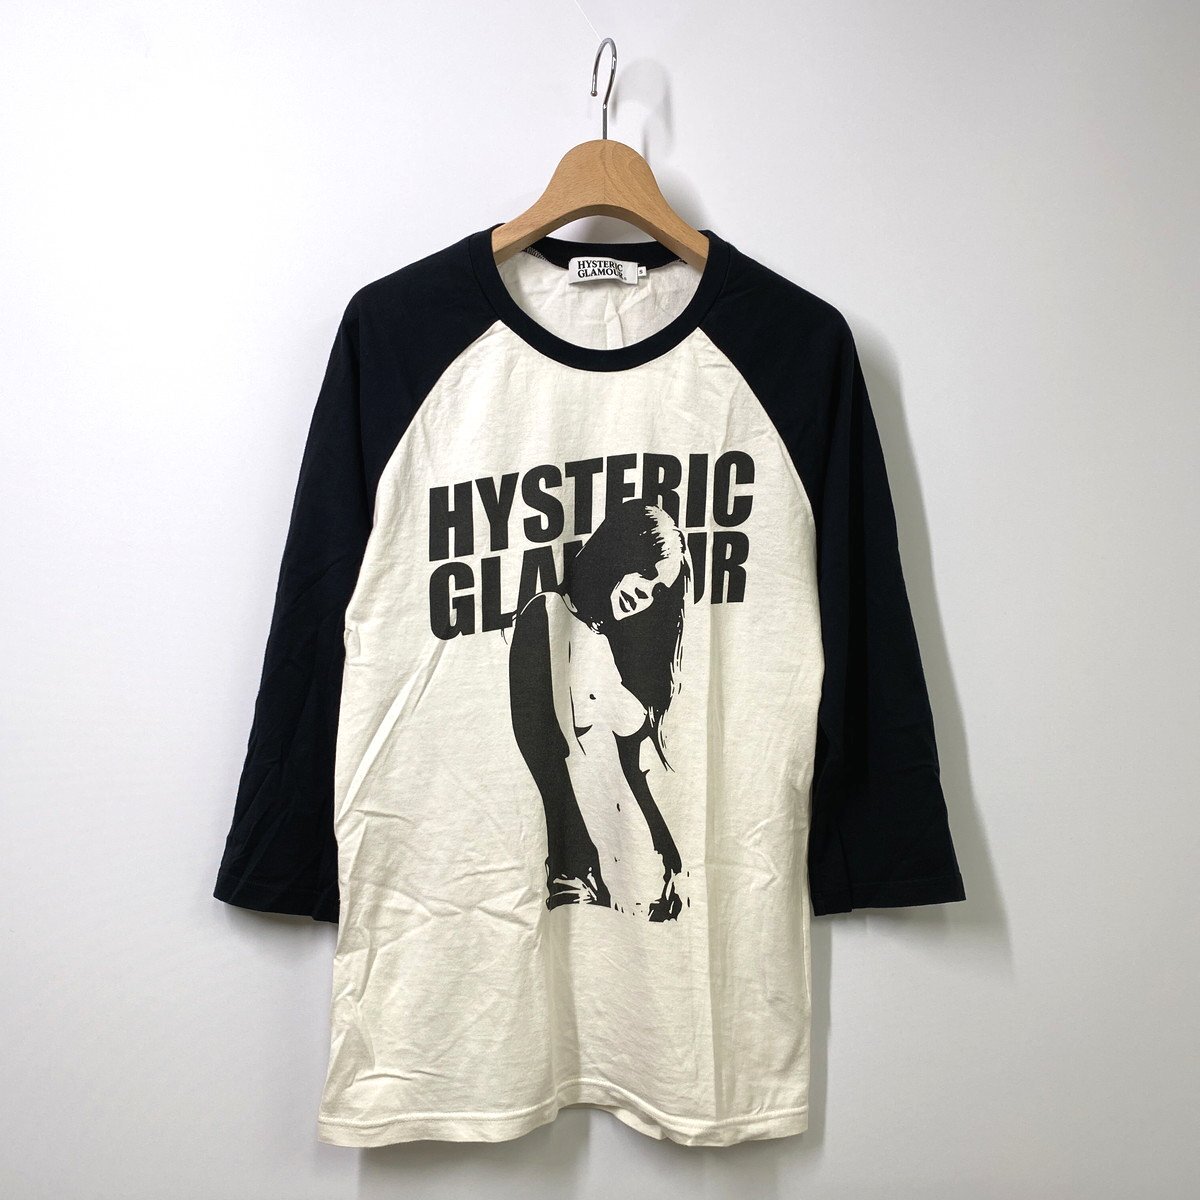 HYSTERIC GLAMOUR ヒステリックグラマー 7分袖ラグランカットソー S ブラック ホワイト 黒 白 Tシャツ ロゴ ガールの画像1